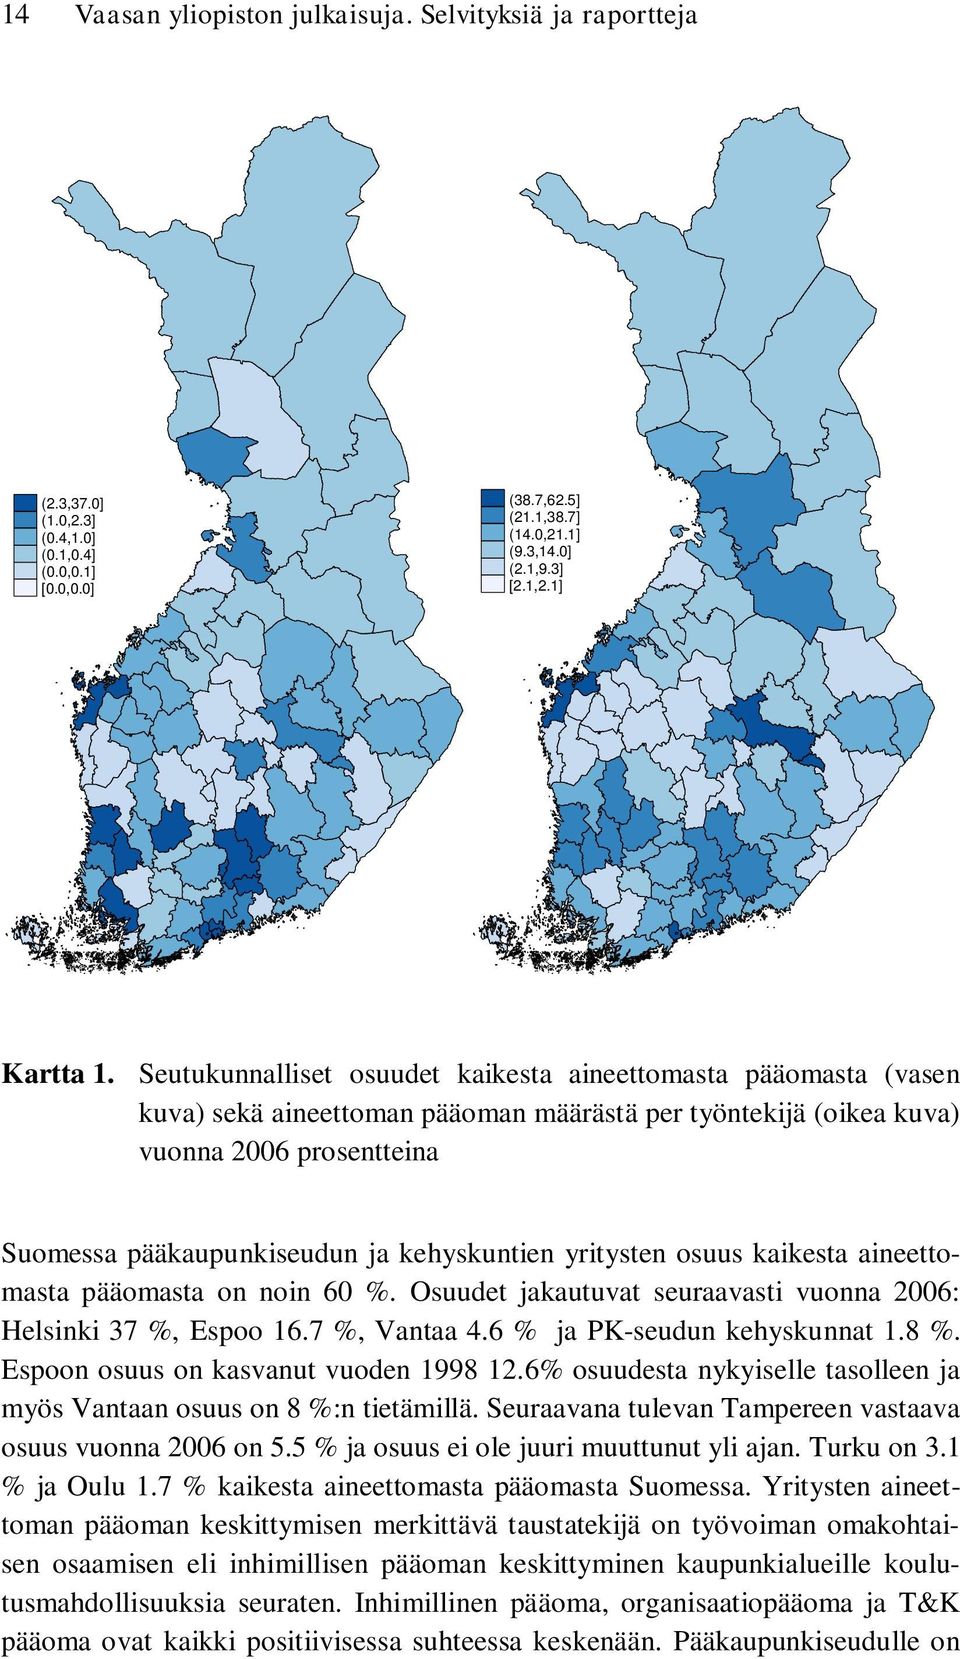 kehyskuntien yritysten osuus kaikesta aineettomasta pääomasta on noin 60 %. Osuudet jakautuvat seuraavasti vuonna 2006: Helsinki 37 %, Espoo 16.7 %, Vantaa 4.6 % ja PK-seudun kehyskunnat 1.8 %.